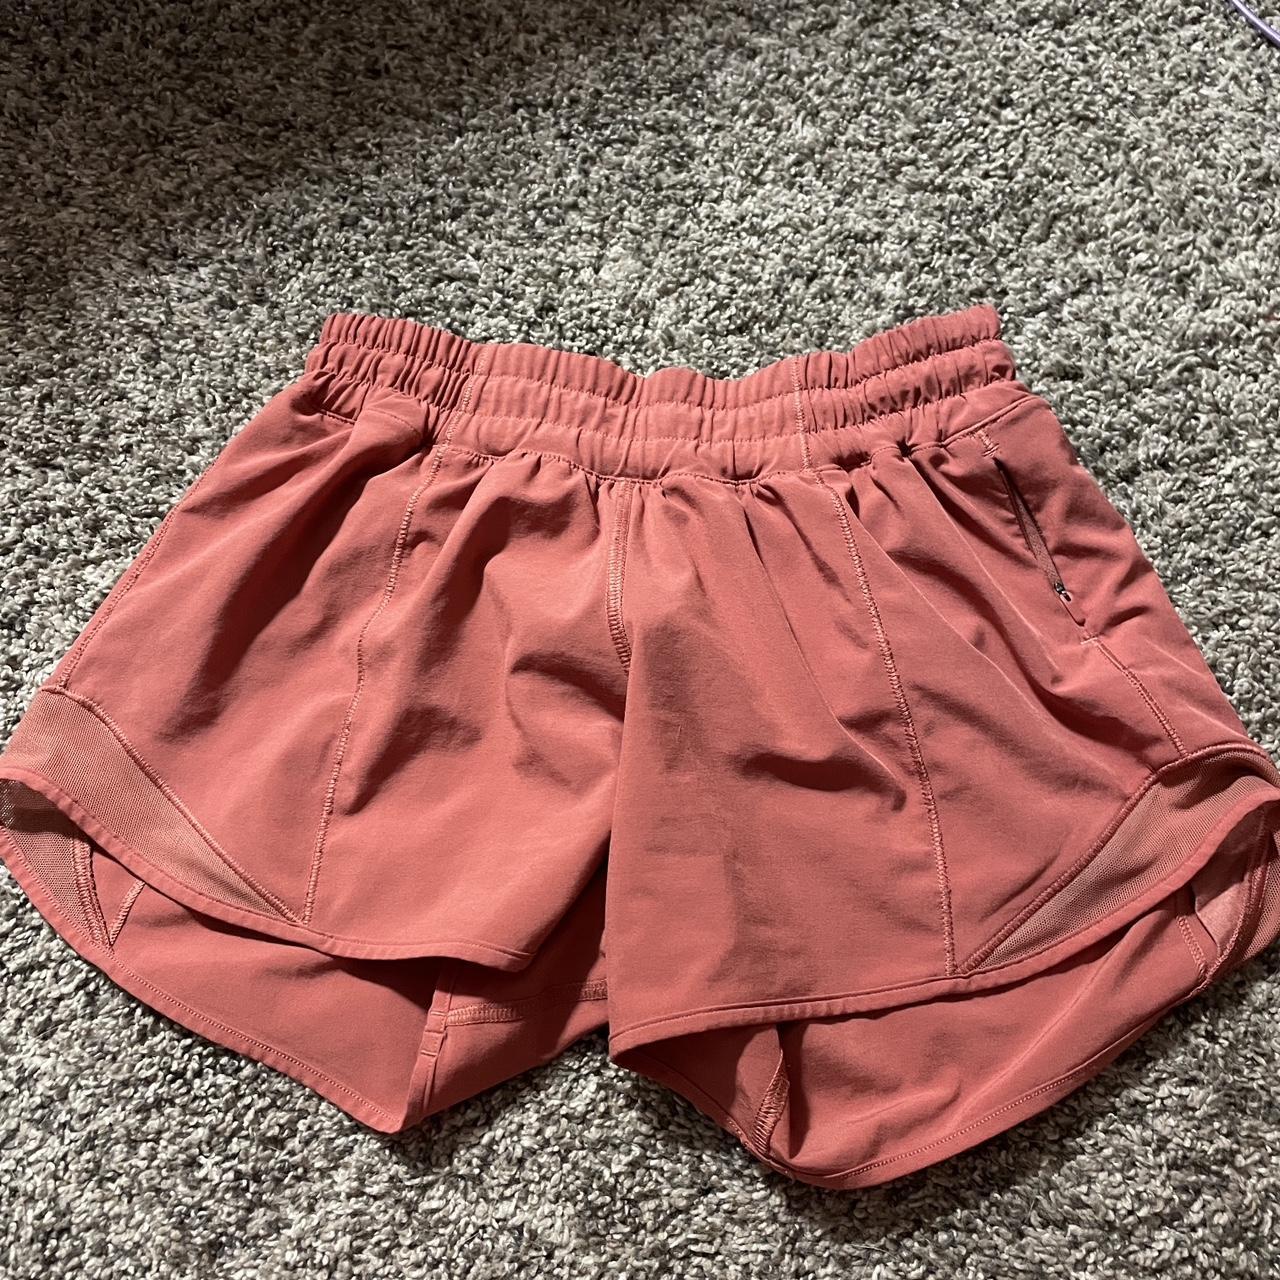 Lululemon hotty hot shorts size 2 rare pinkish red - Depop